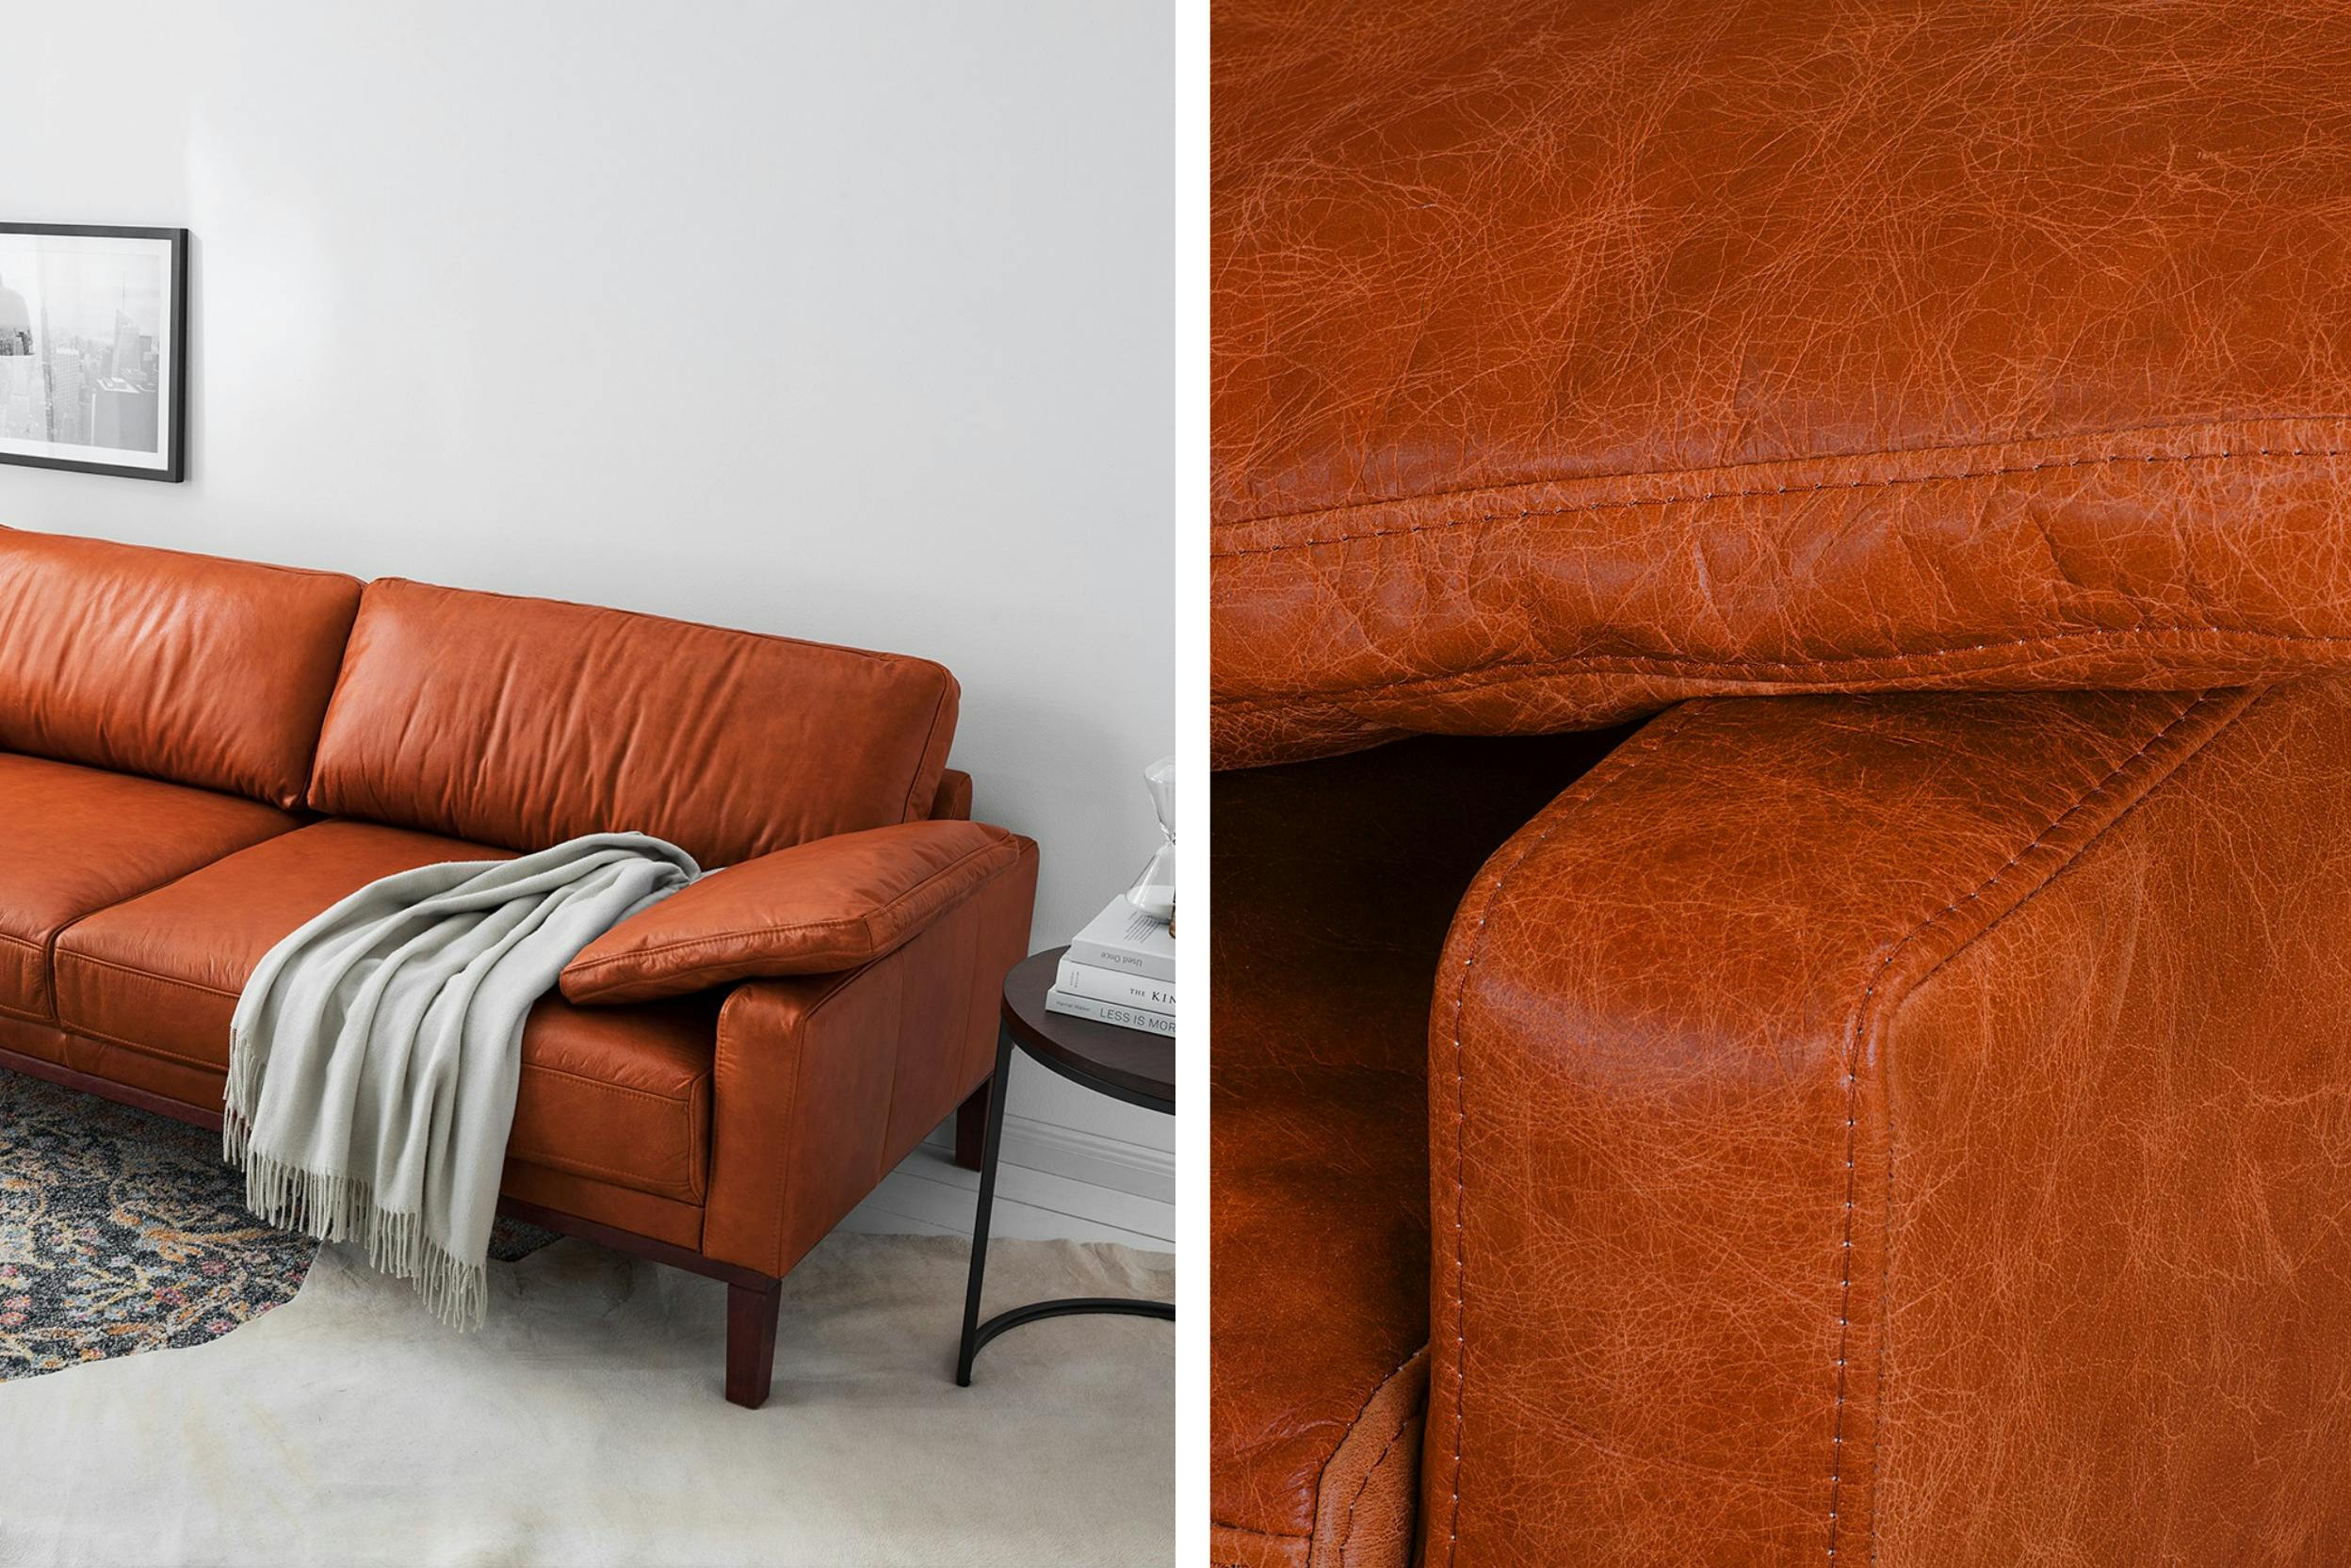 Comment entretenir votre canapé en cuir ? Les astuces de votre